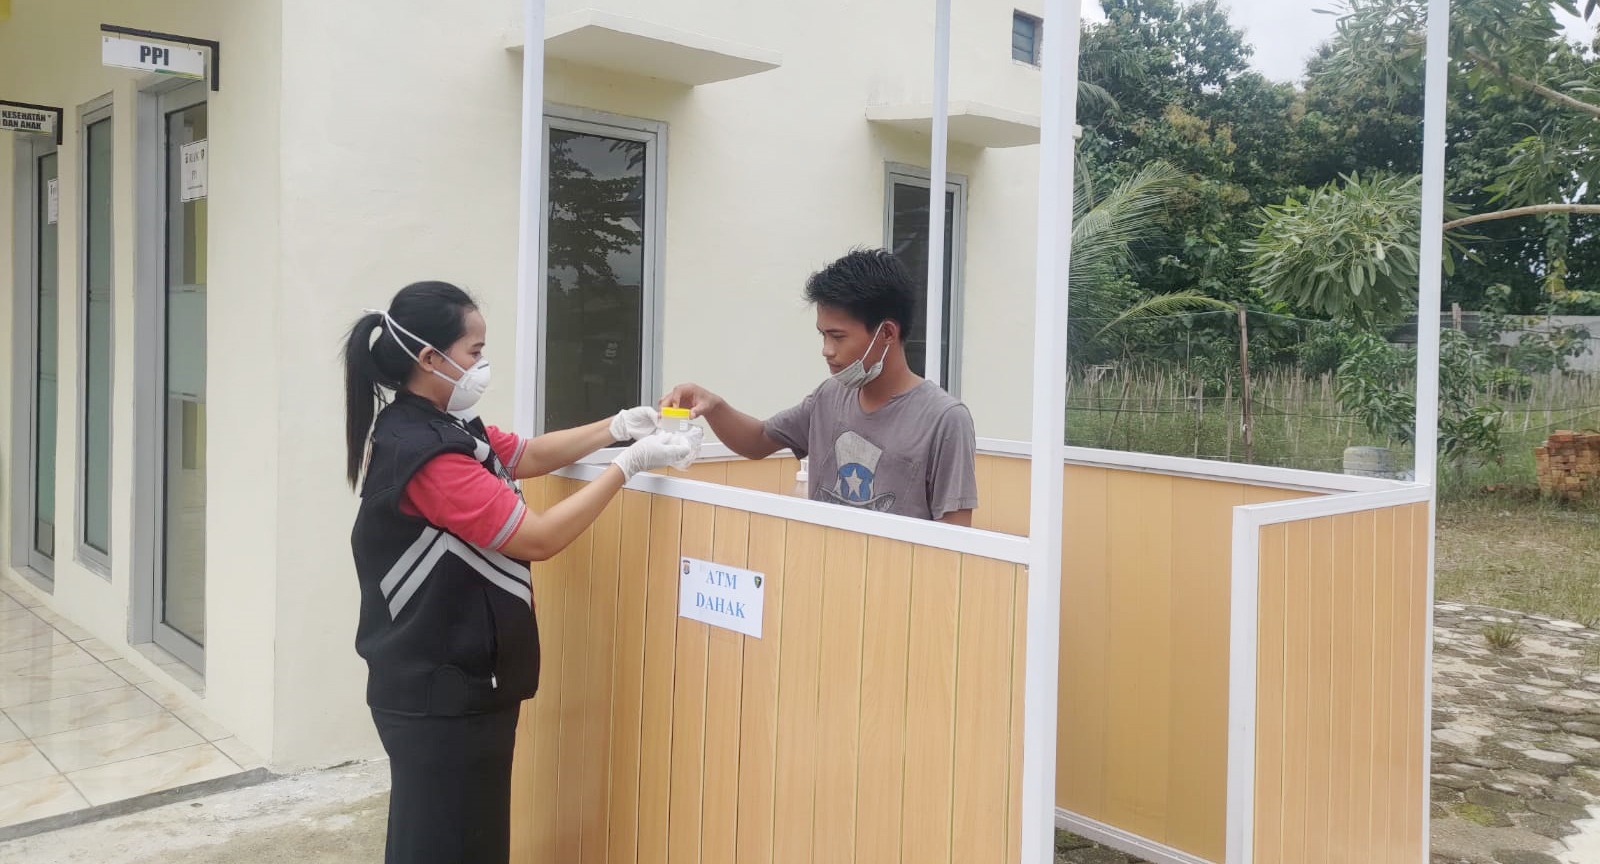 Pertama di Jajaran Polda Lampung, Polres Tulang Bawang Buat ATM Dahak 